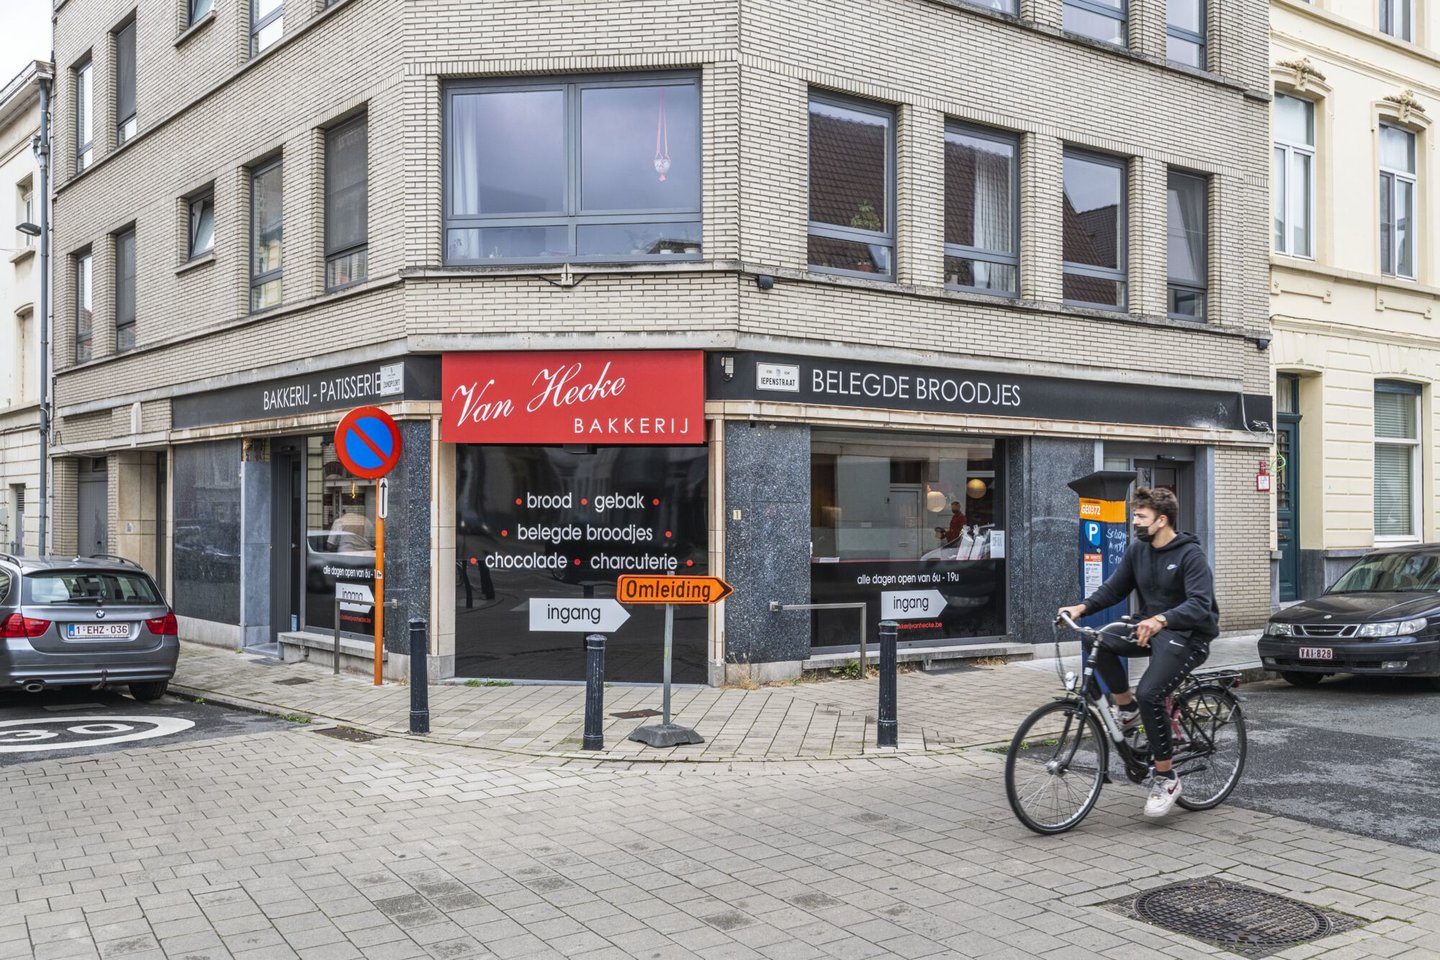 Etalage van bakkerij Van Hecke in Gent